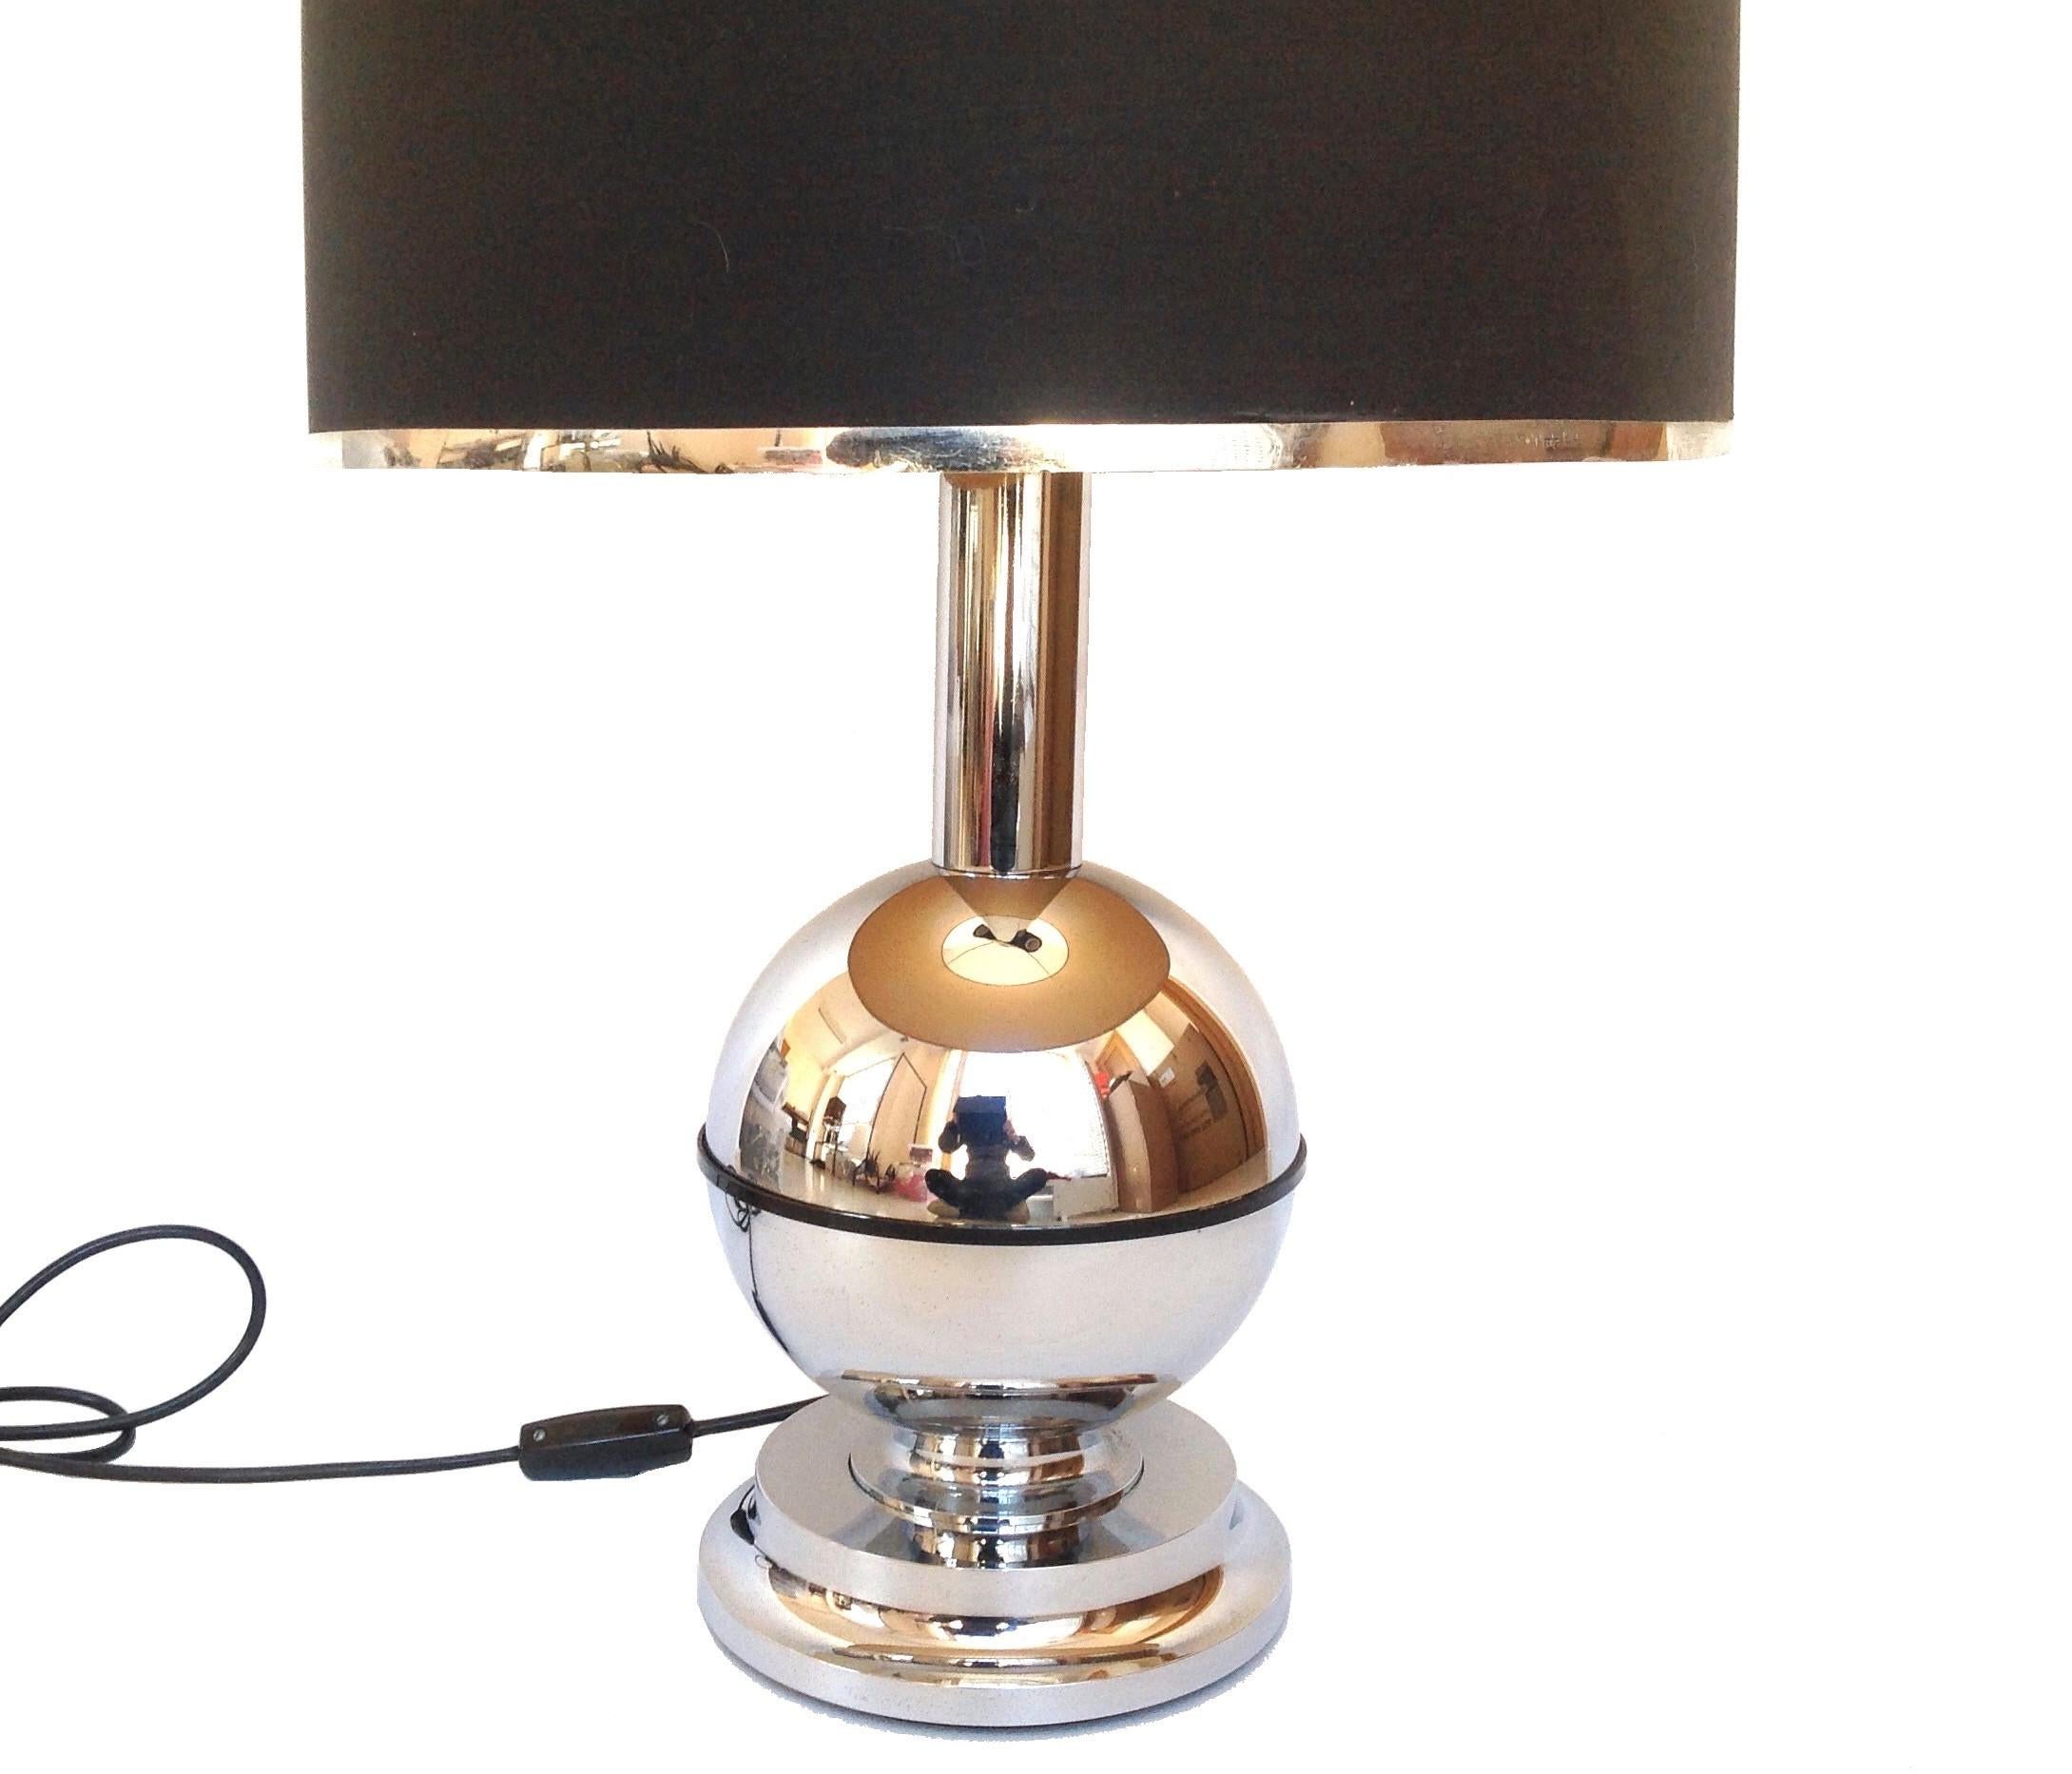 Bellissima e unica lampada da tavolo individuale della metà del secolo scorso, risalente agli anni Settanta. Questa lampada da tavolo è stata realizzata negli anni '70 a Barcellona da 